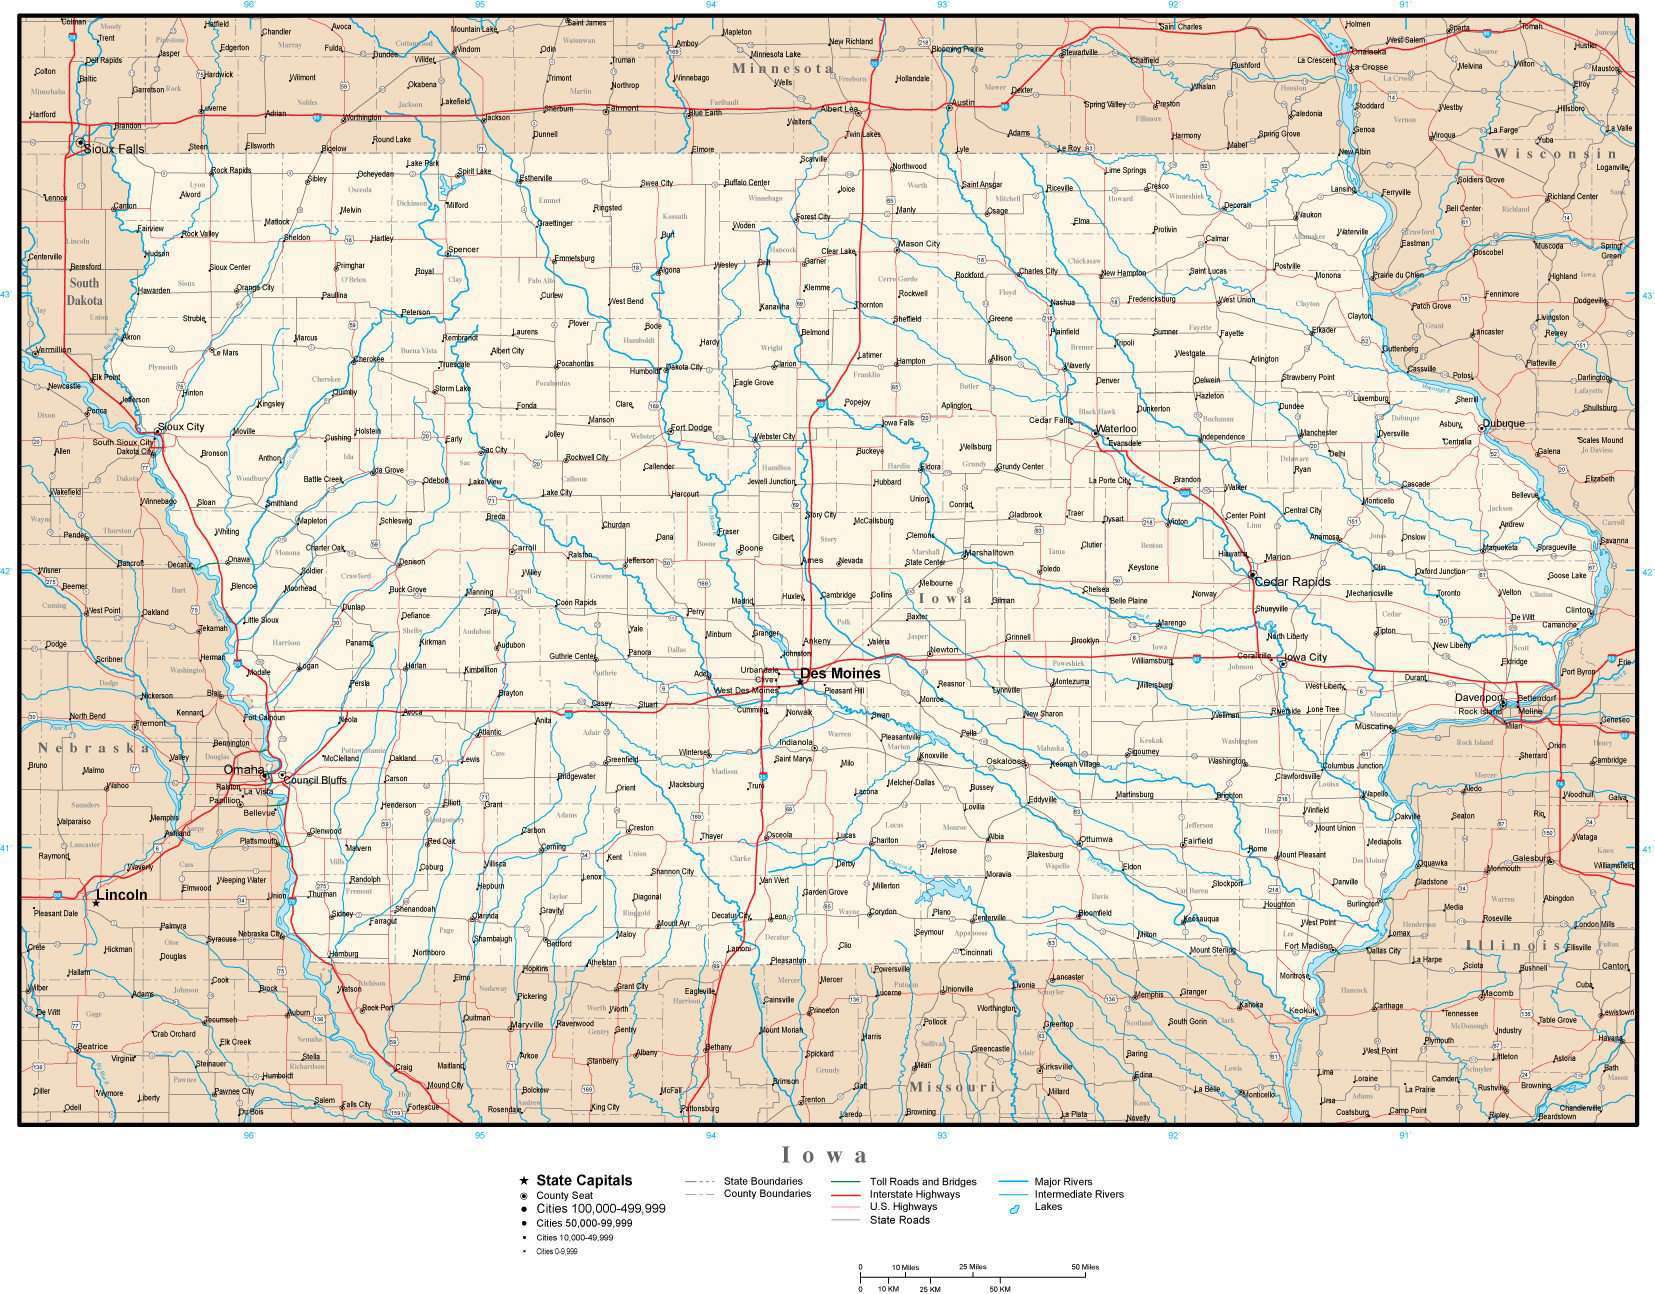 Iowa State Parks Map 1004